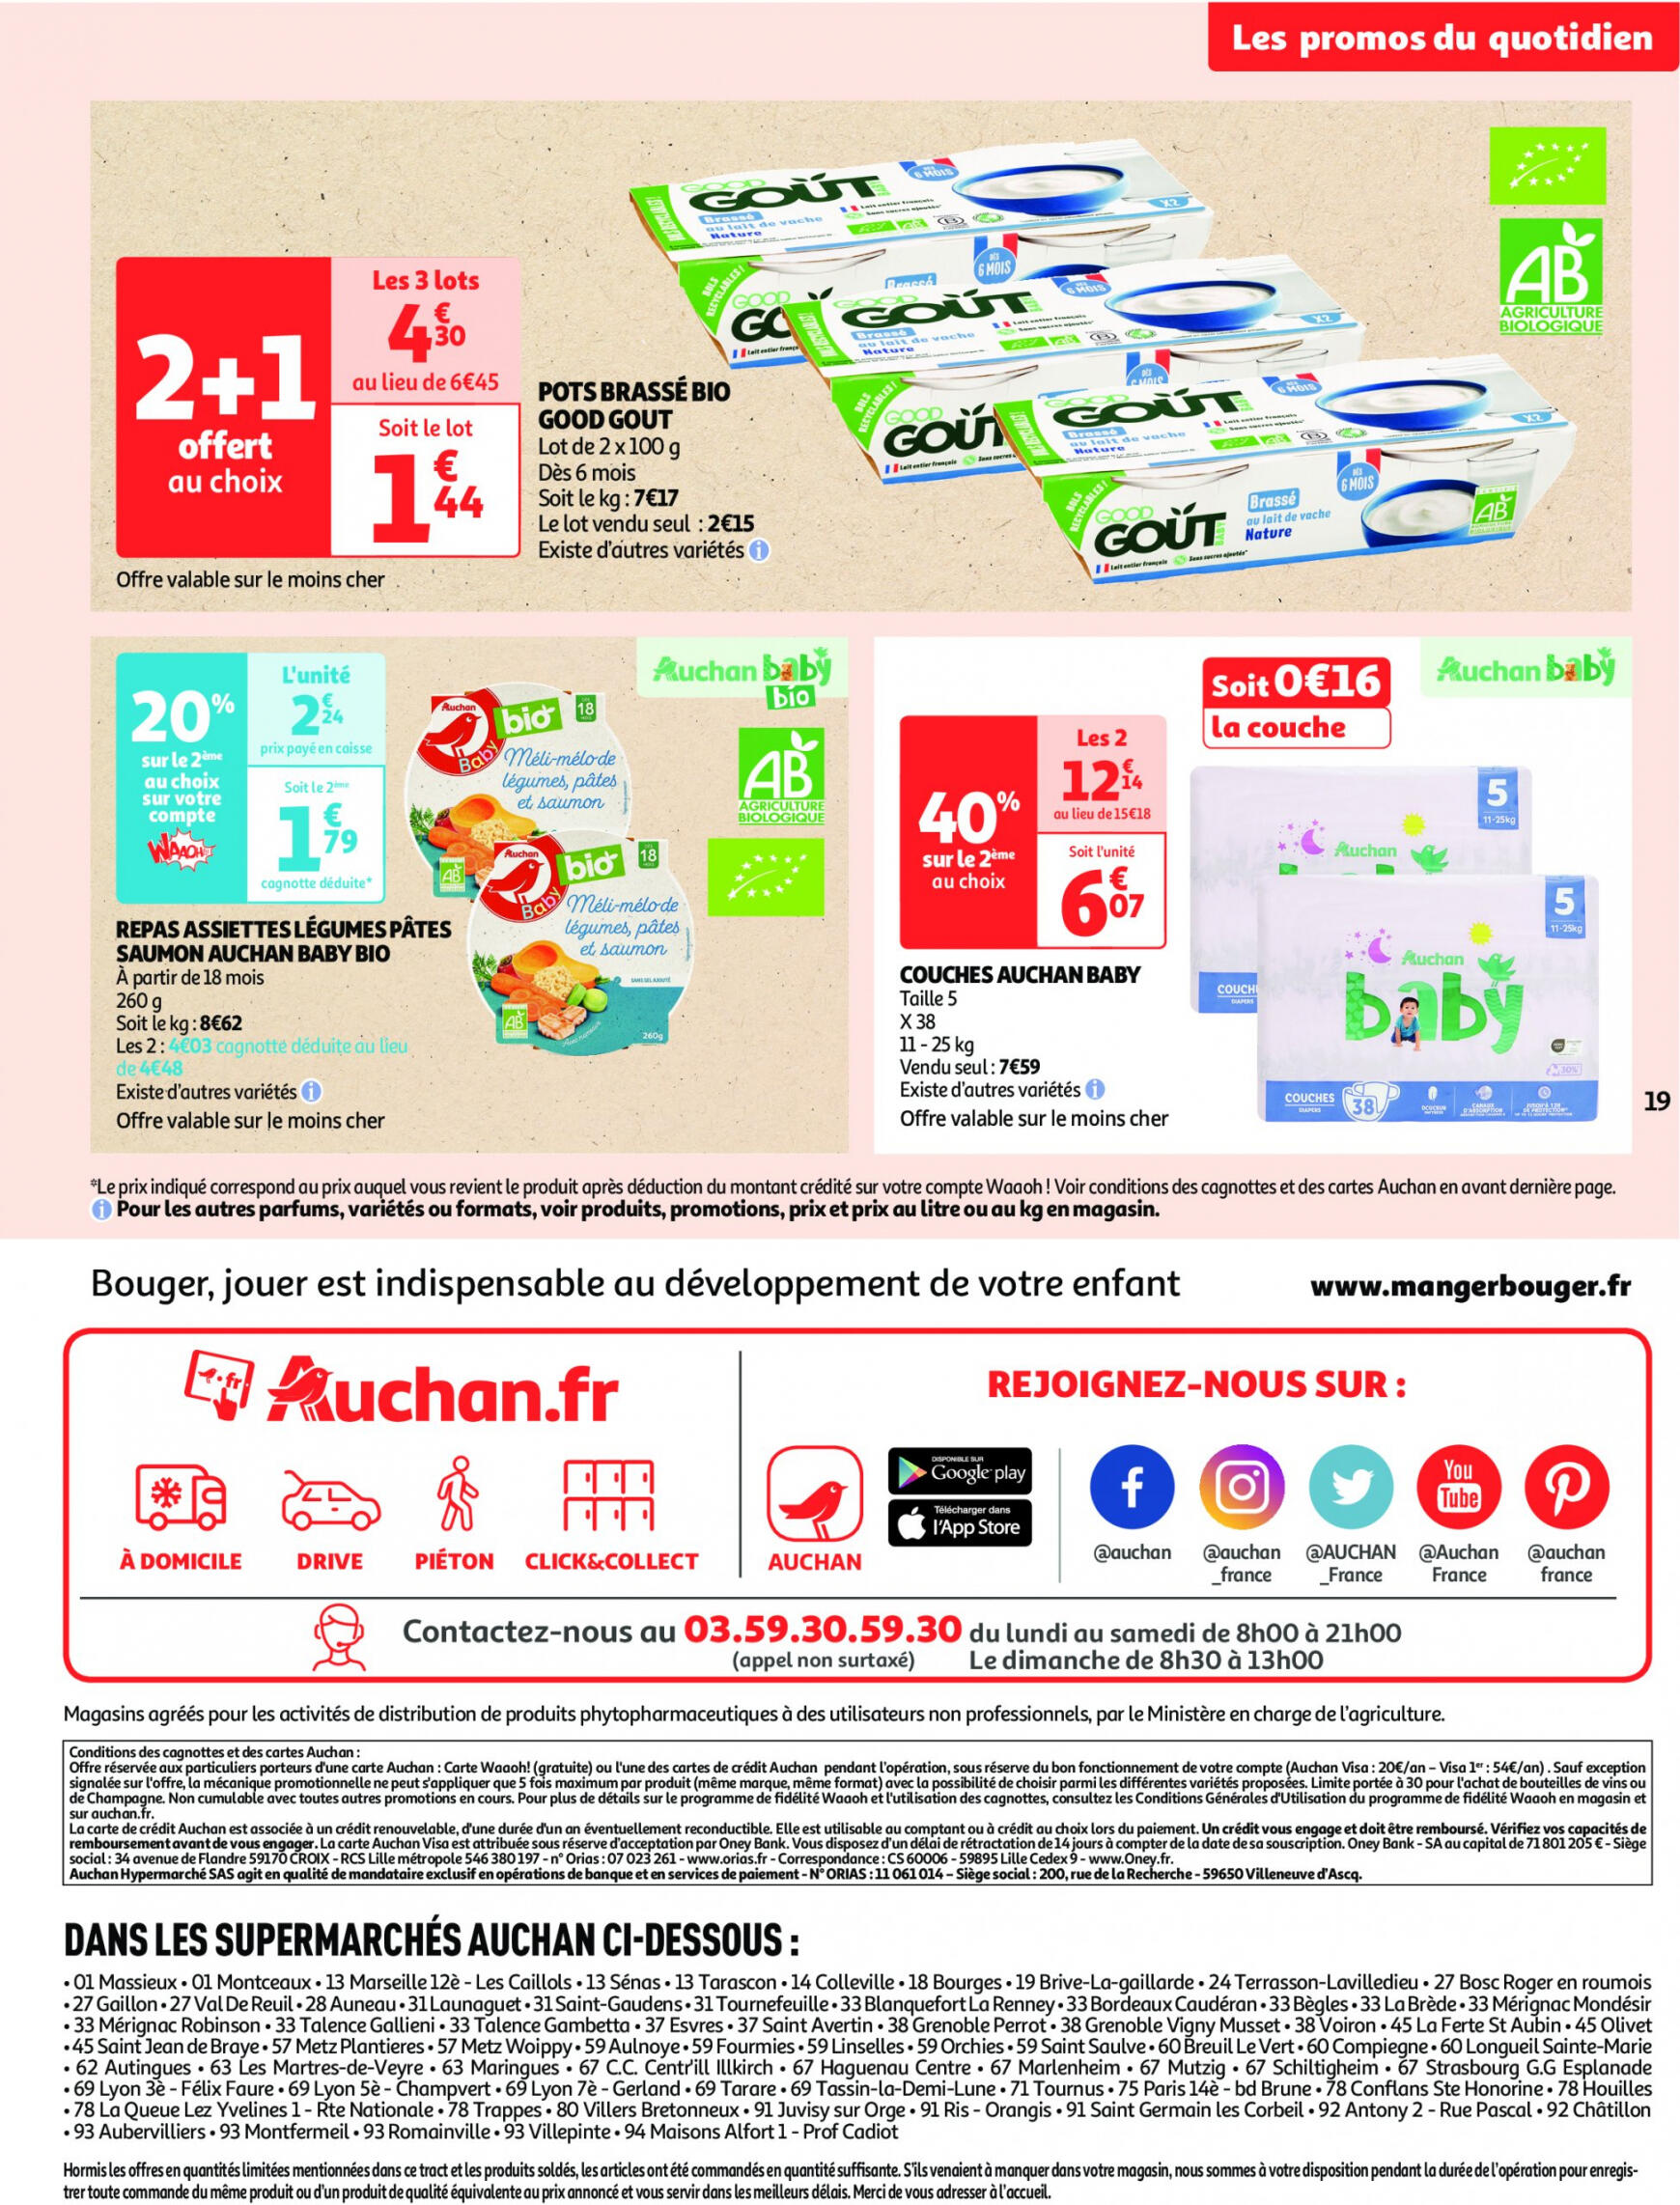 auchan - Auchan - On met le turbot sur les produits de la mer folder huidig 14.05. - 19.05. - page: 19